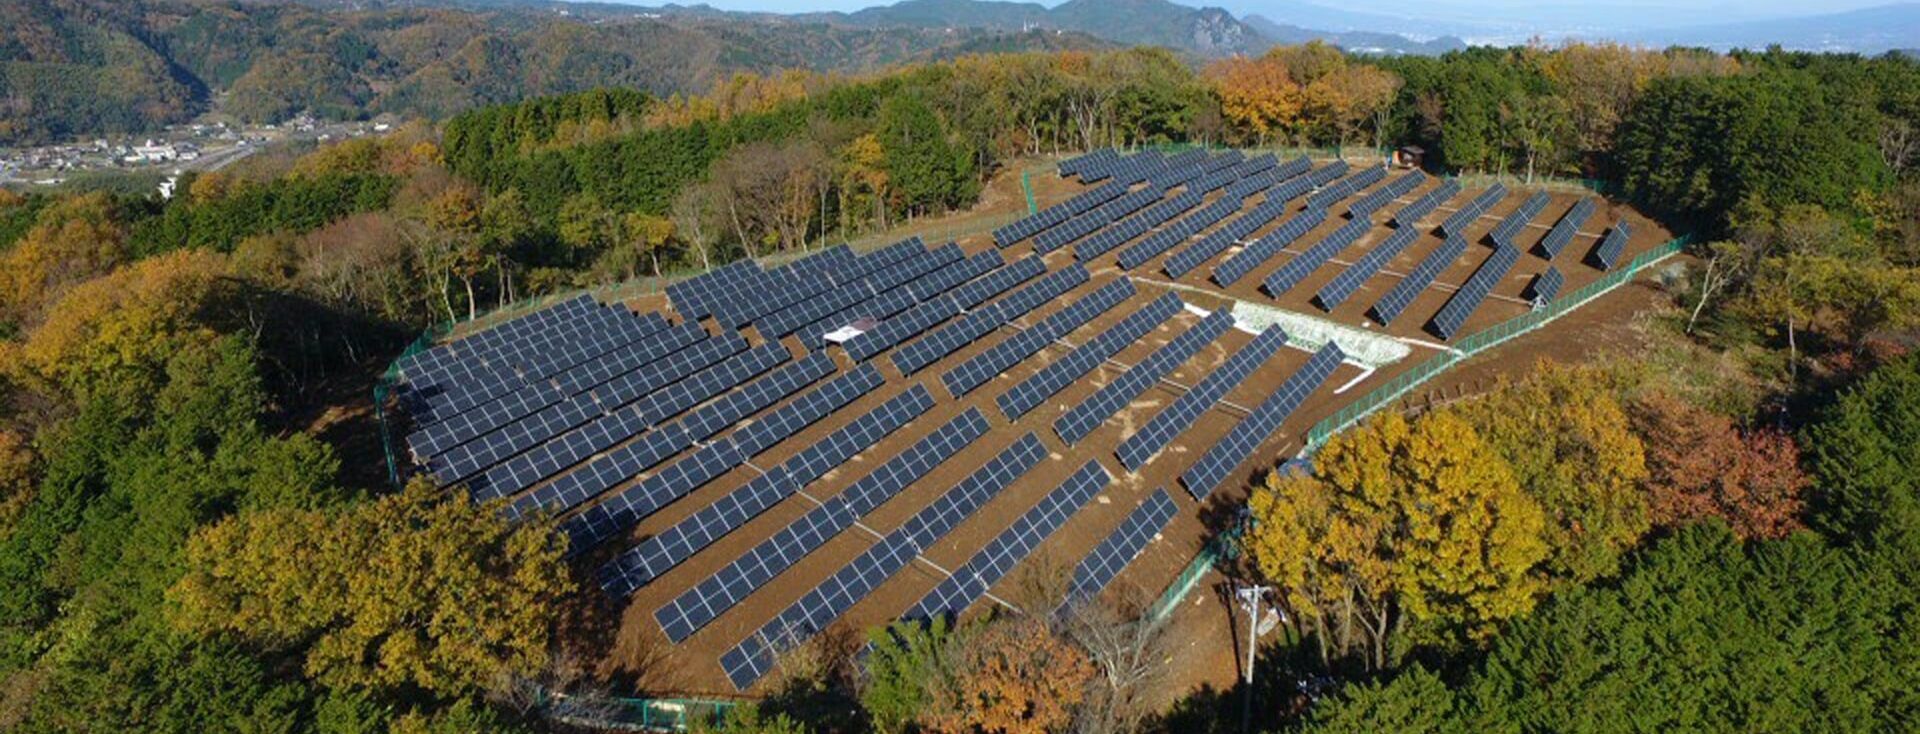 Paineis Solares - O que é necessário para investir em uma franquia de energia solar?